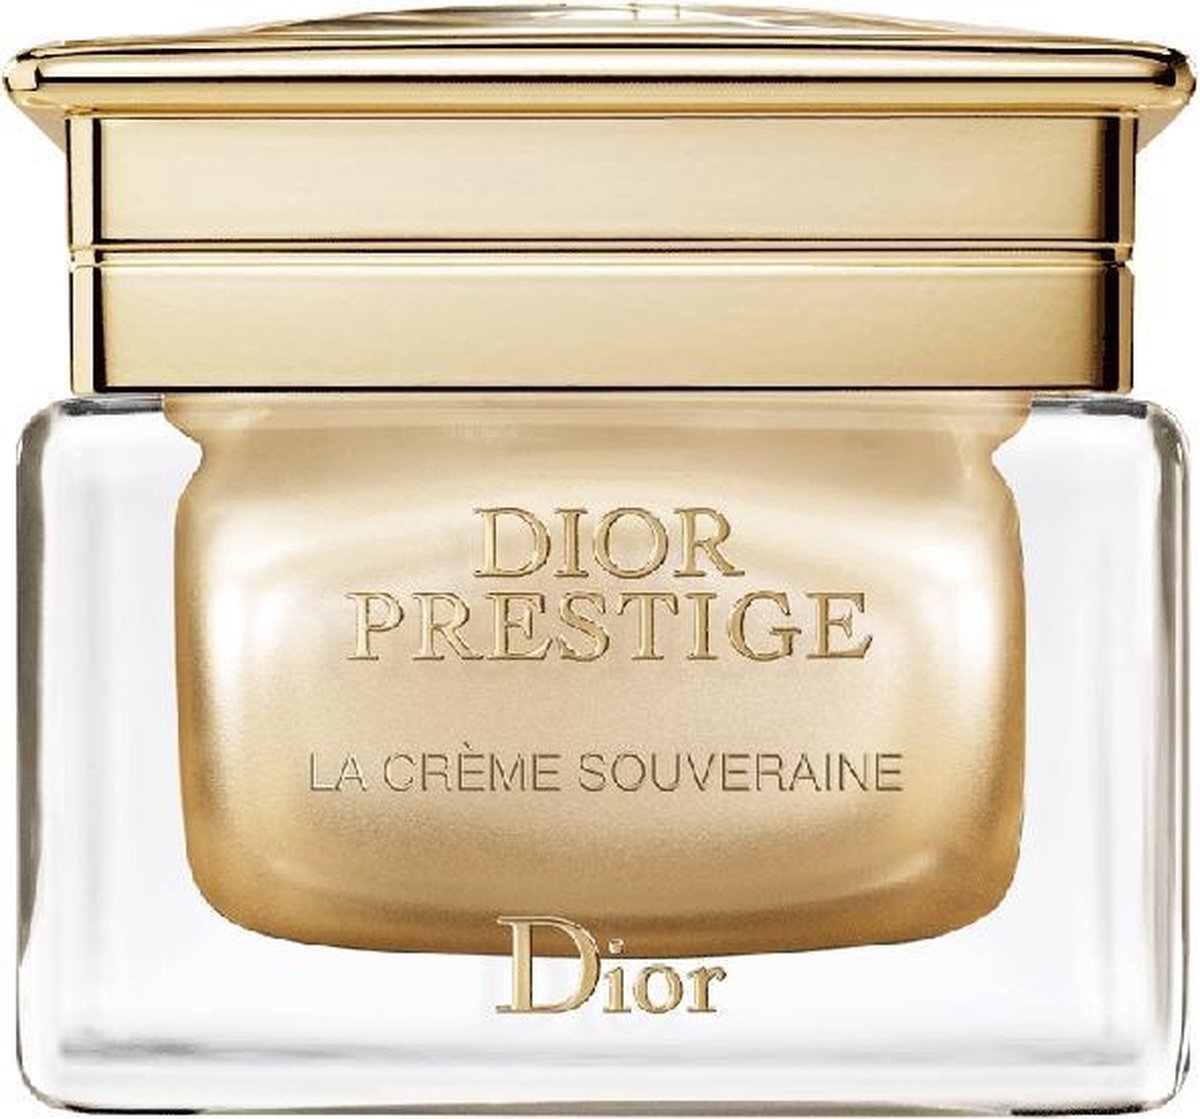 Dior Prestige La Creme Souveraine 50 ml